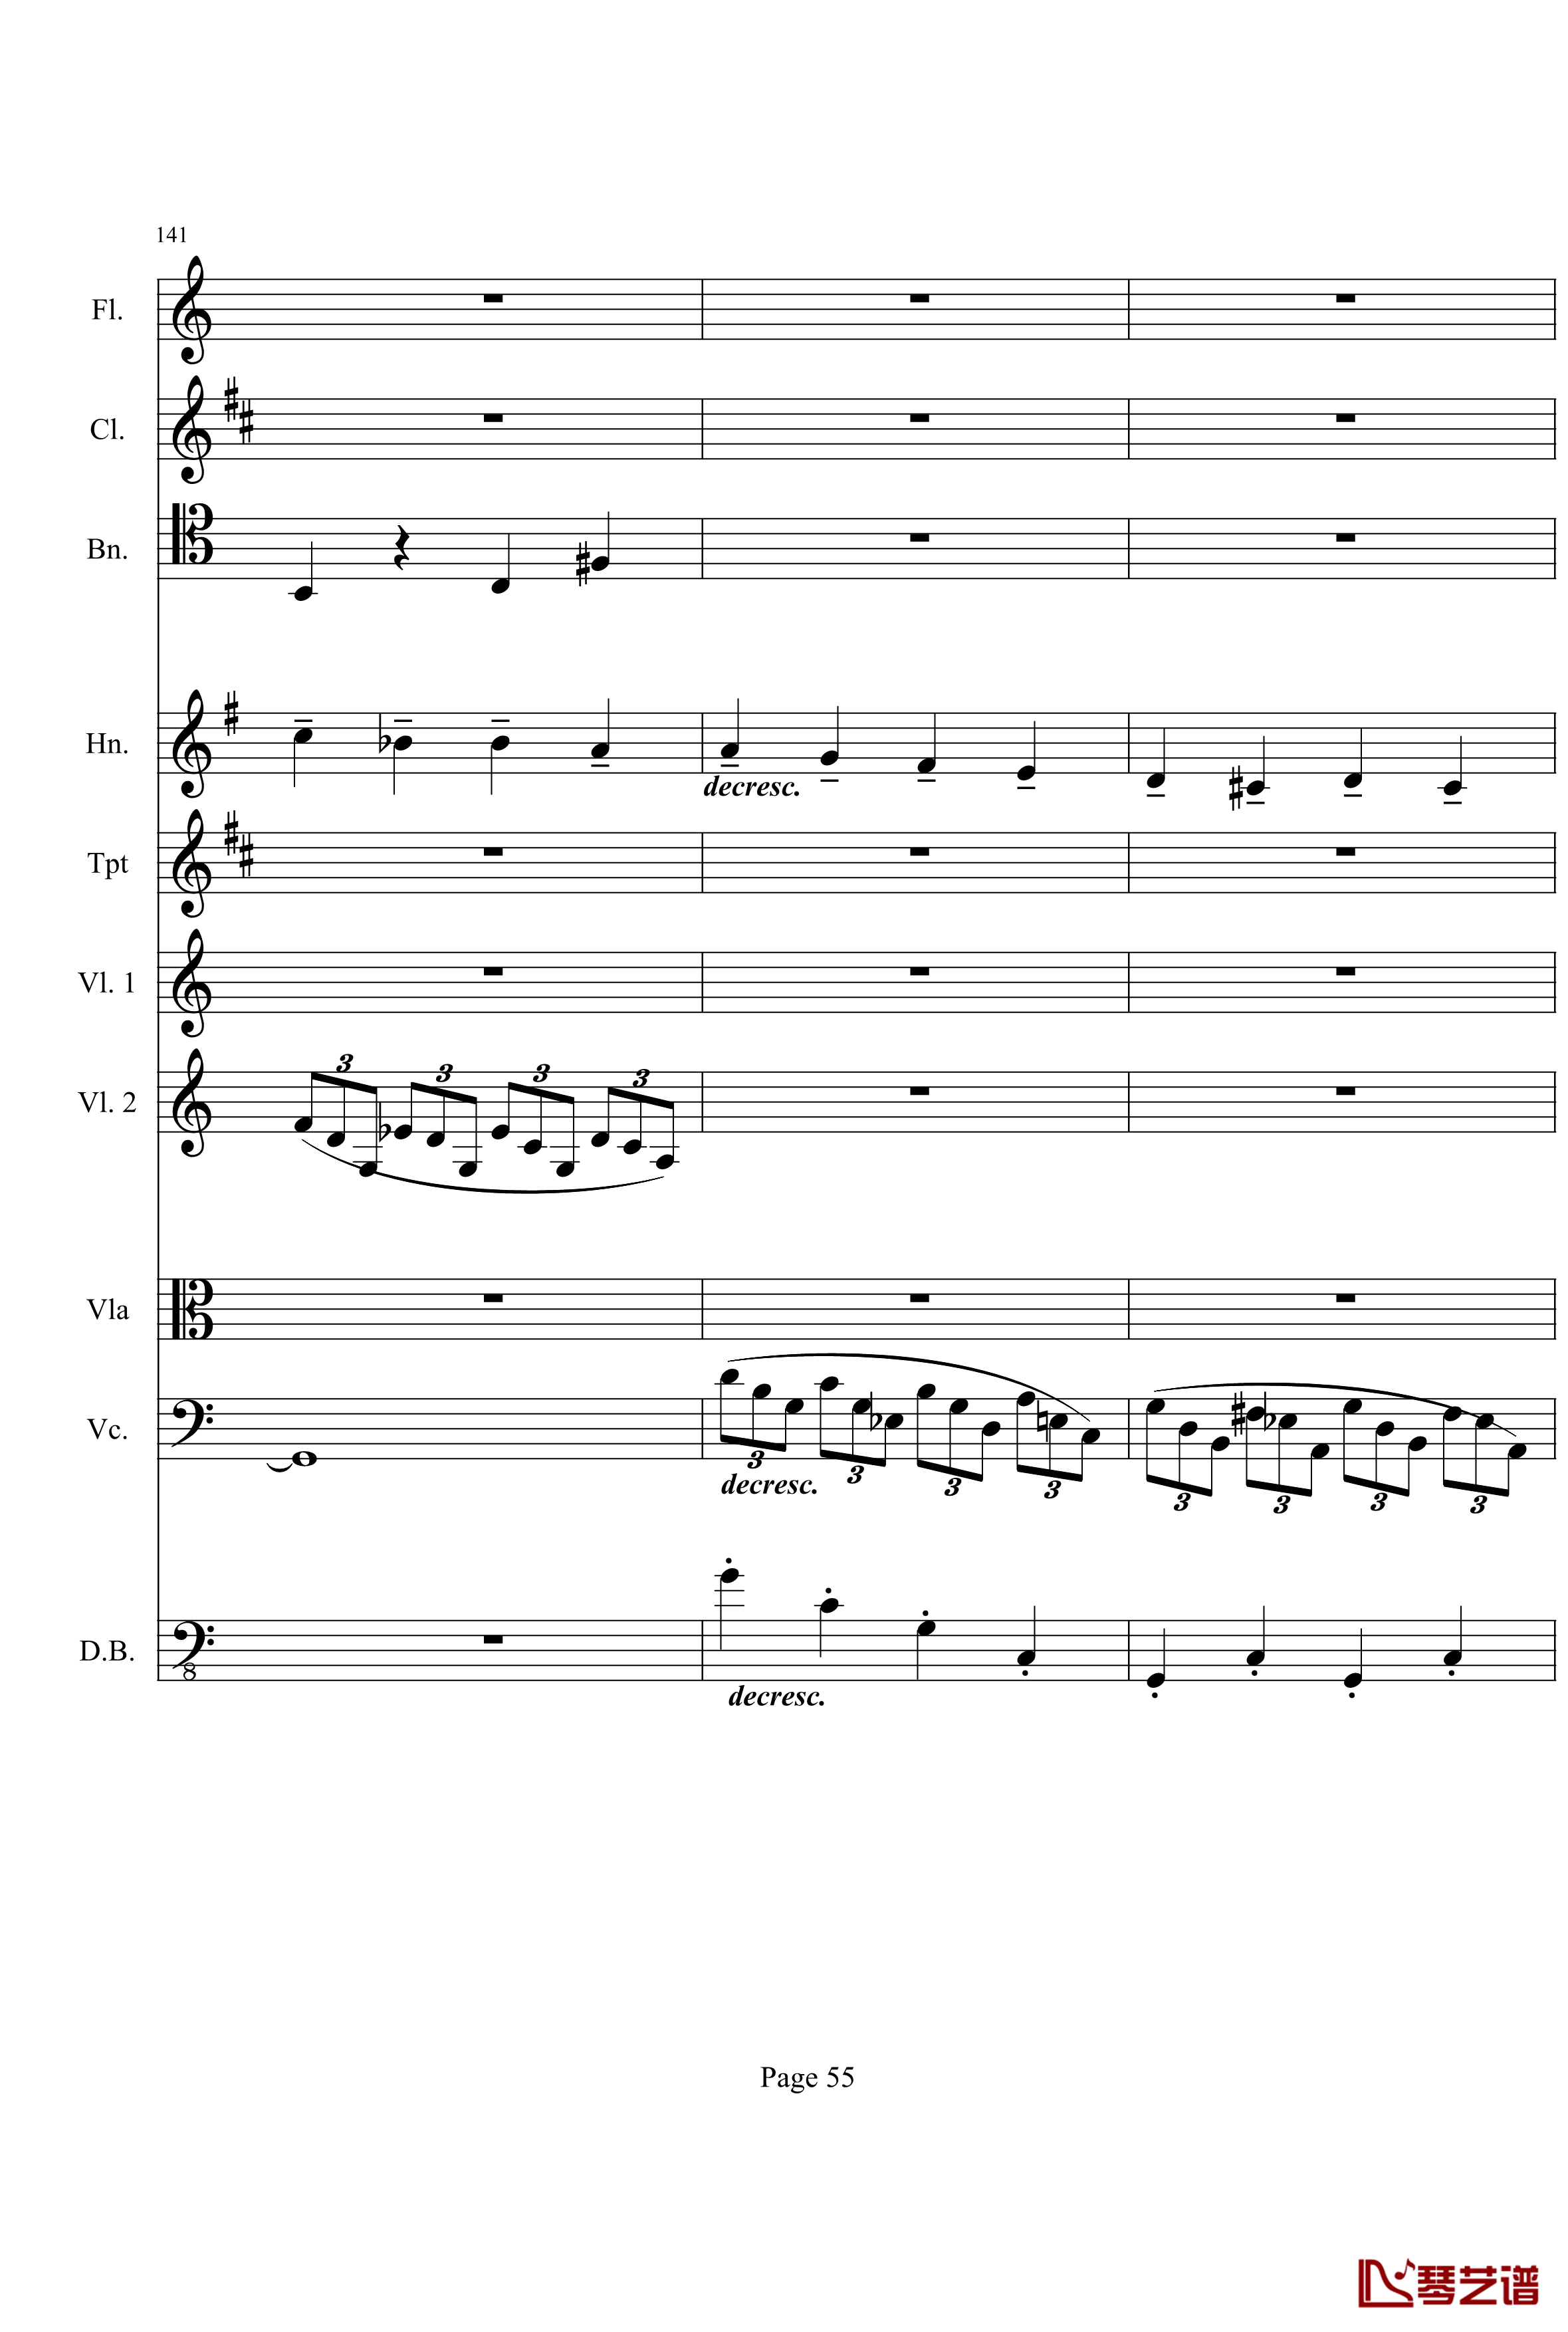 奏鸣曲之交响钢琴谱-第21首-Ⅰ-贝多芬-beethoven55